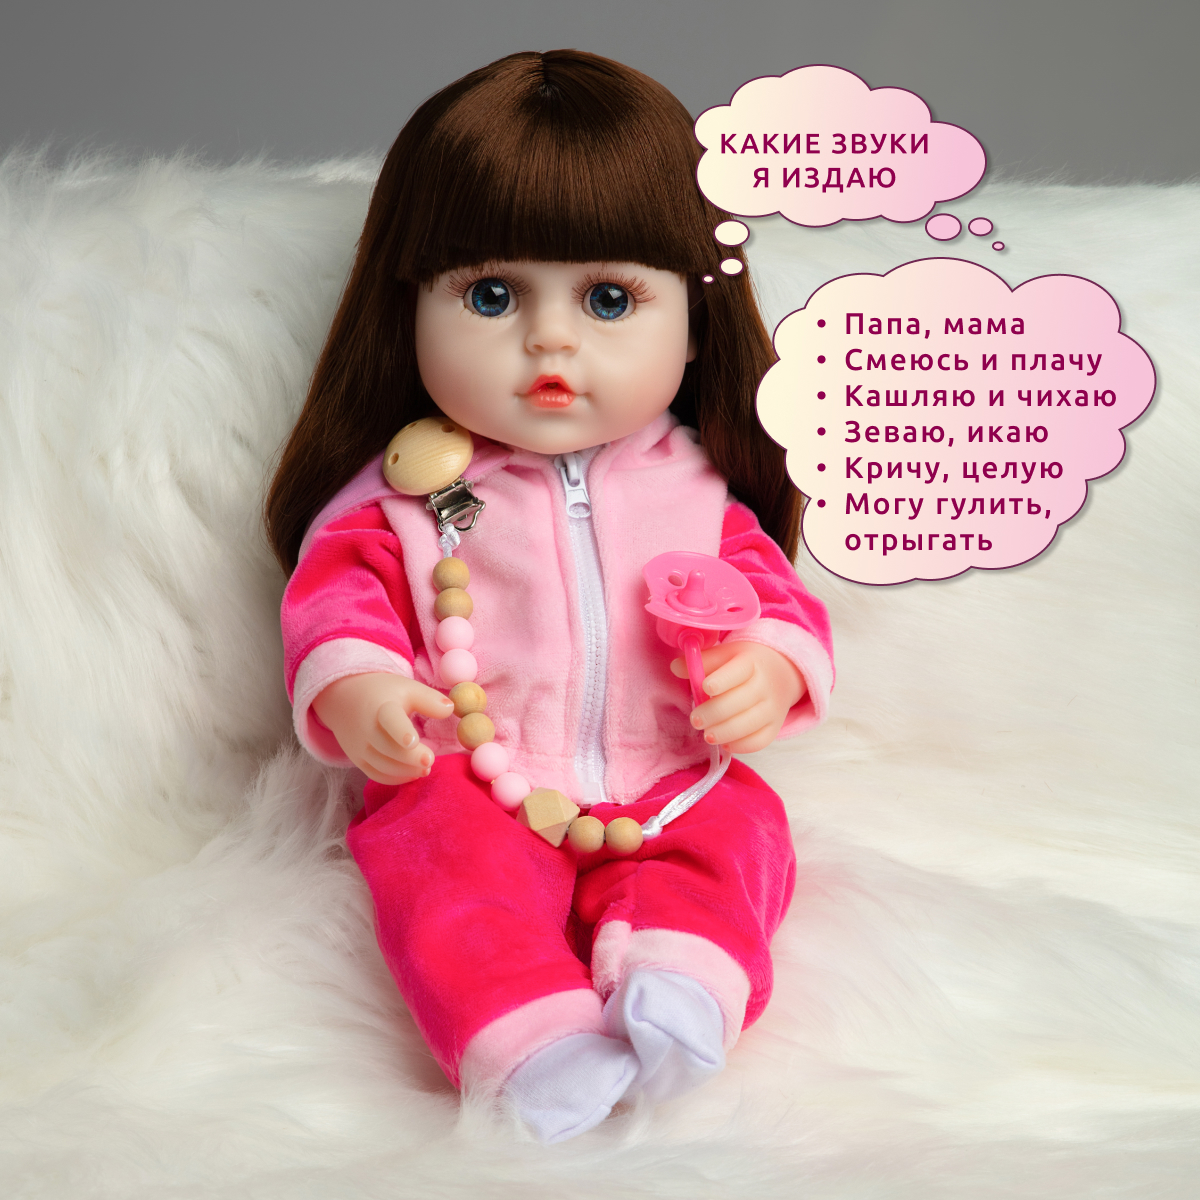 Кукла Реборн QA BABY Натали девочка интерактивная Пупс набор игрушки для ванной для девочки 38 см 3809 - фото 3